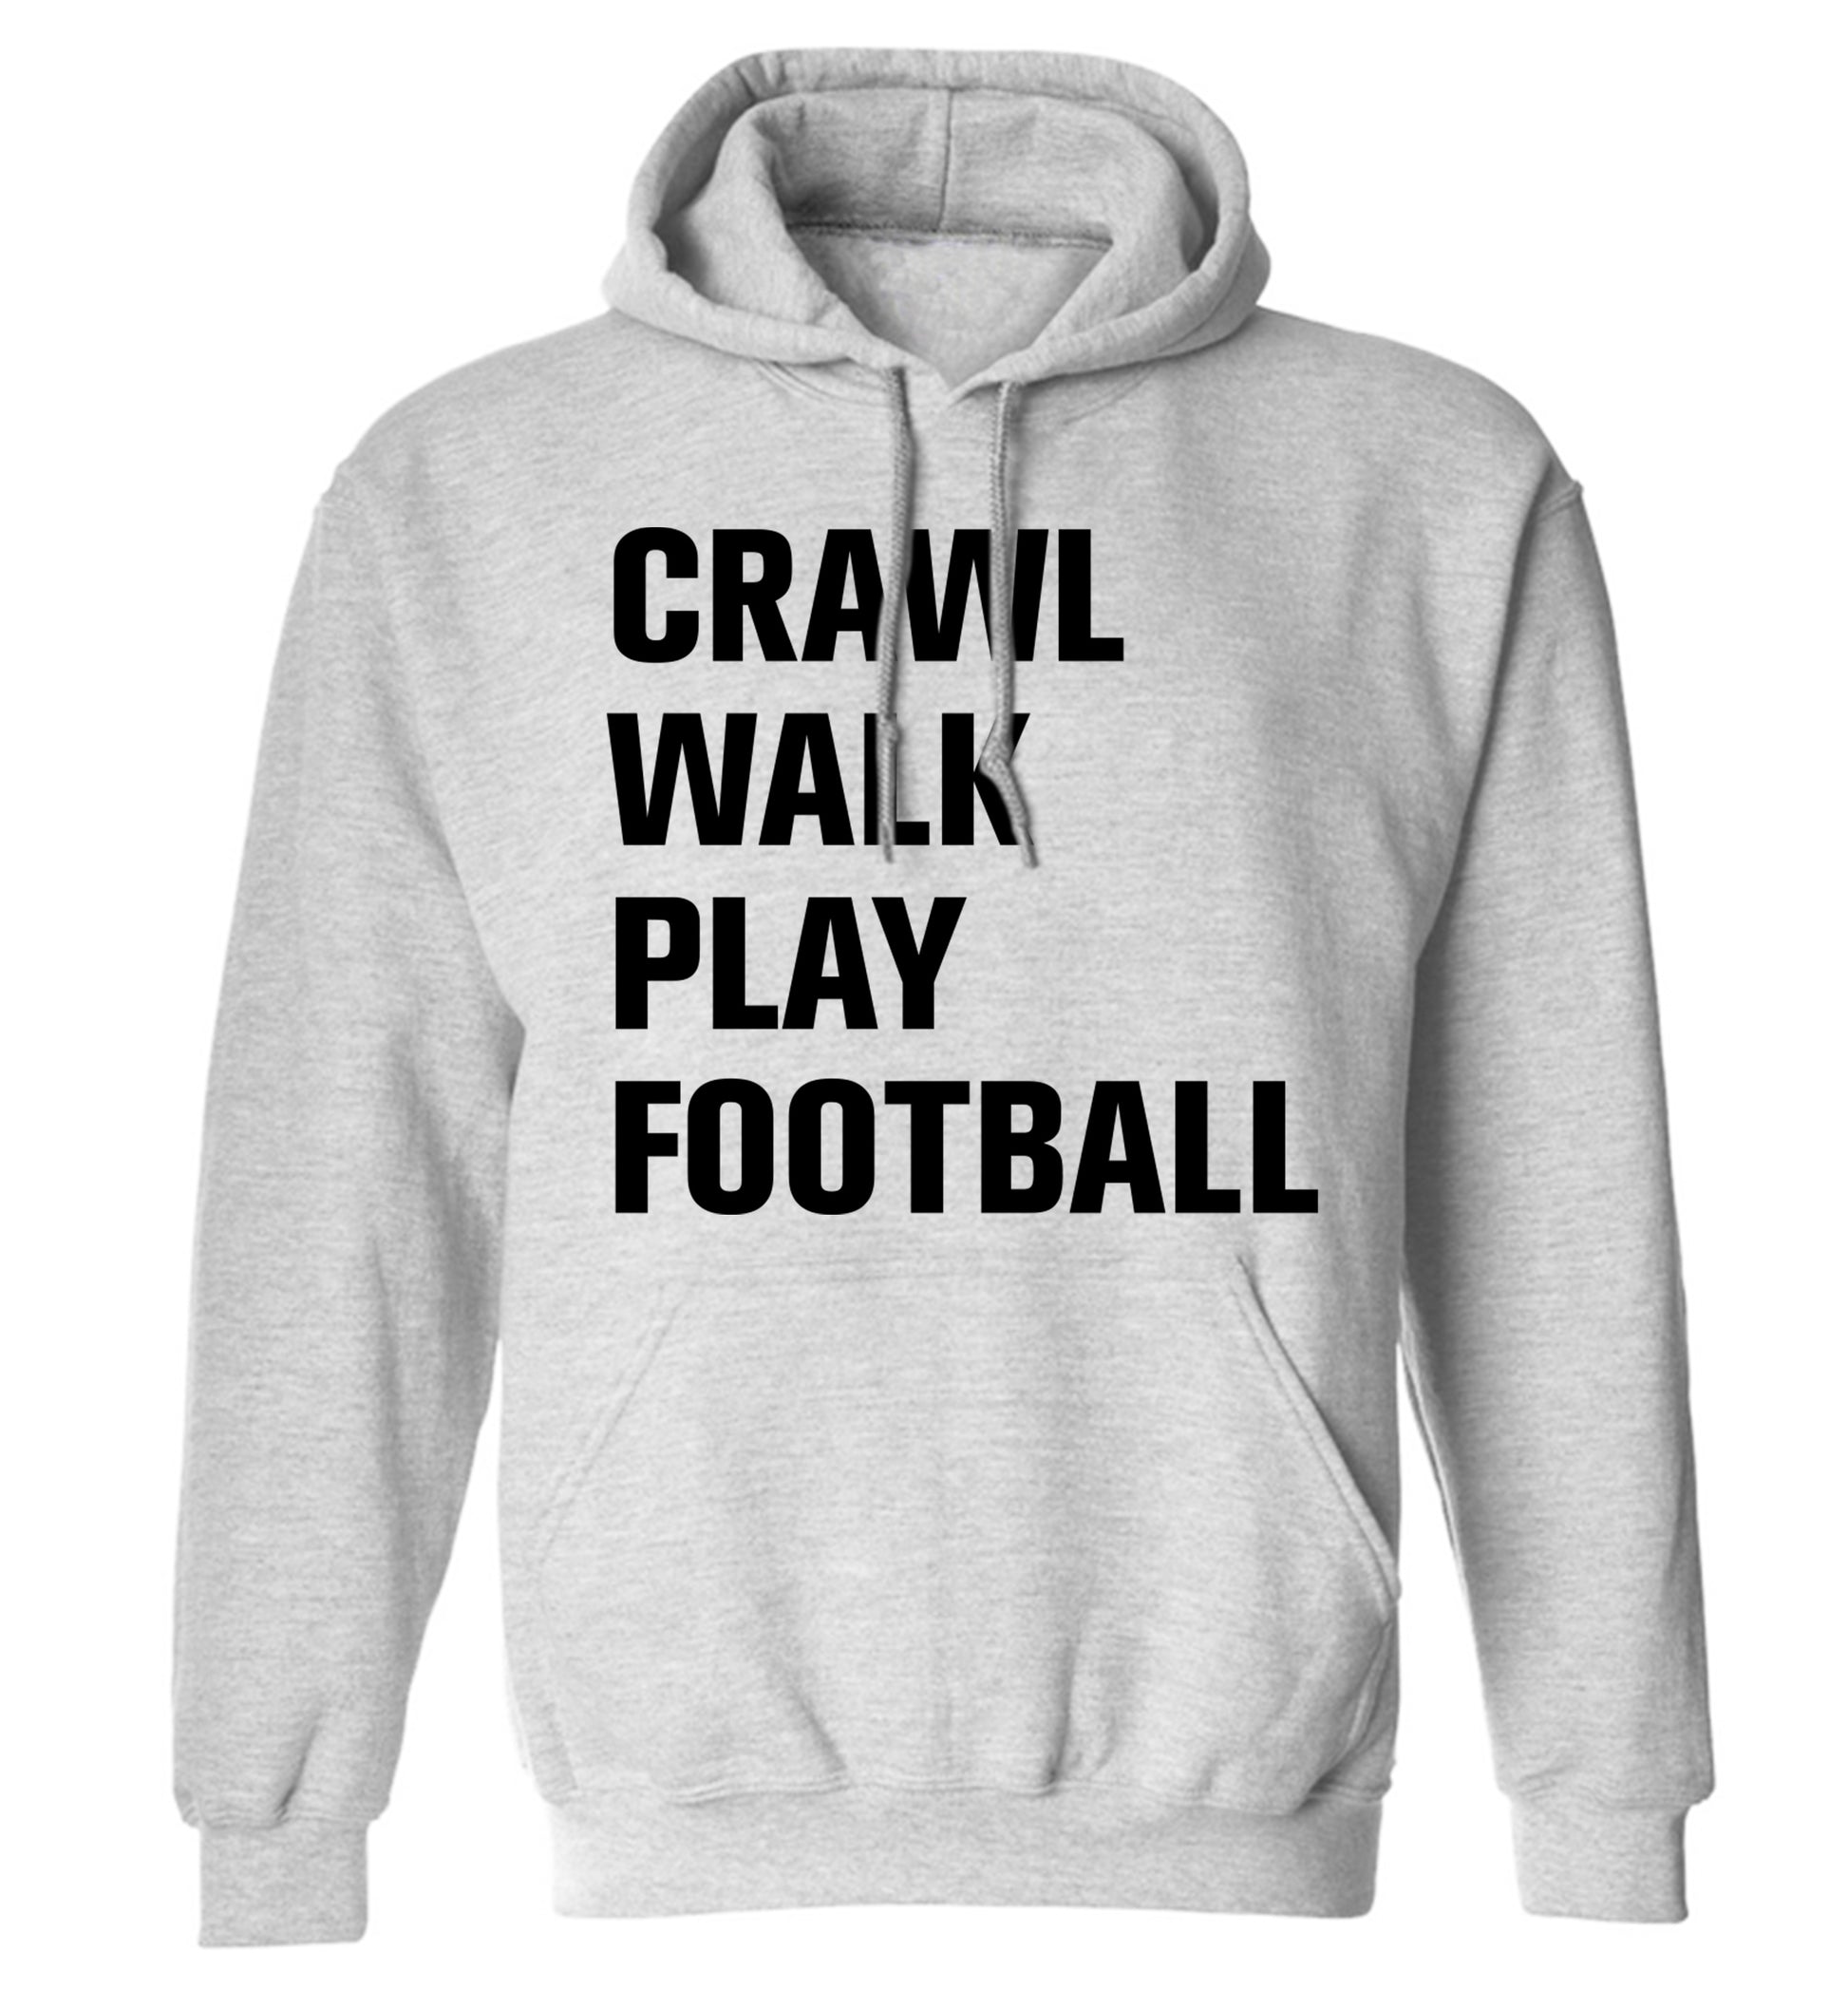 Crawl, walk, play football adults unisex grey hoodie 2XL